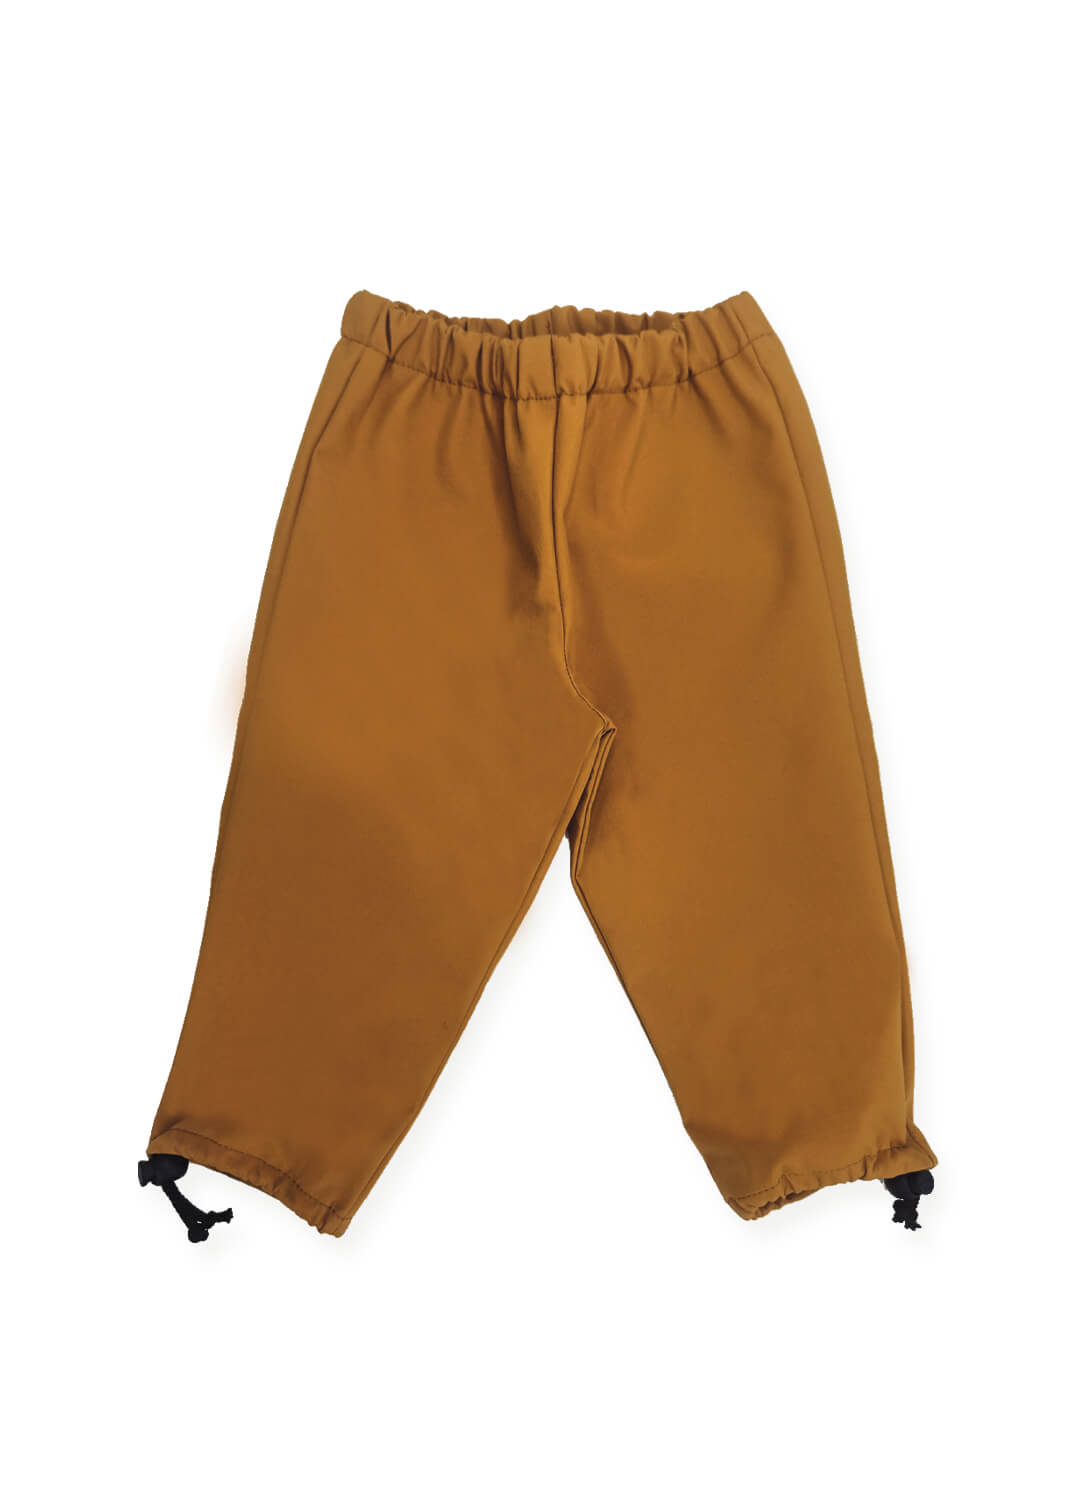 pantalon pluie enfant imperméable coton bio made in france camel